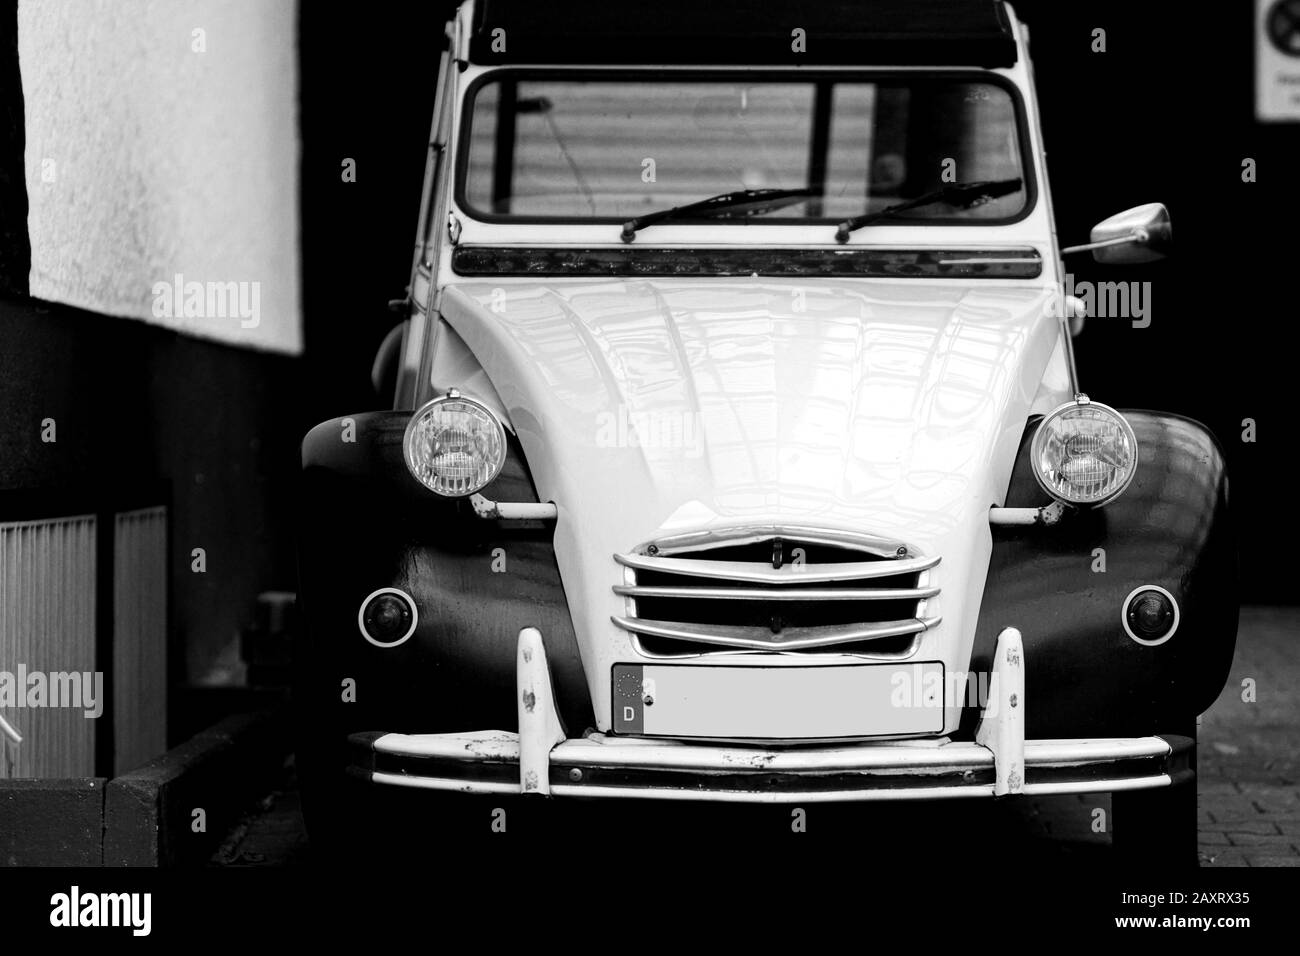 La vue avant de la calandre et le pare-brise d'une vieille voiture de collection Citroën 2CV. Banque D'Images